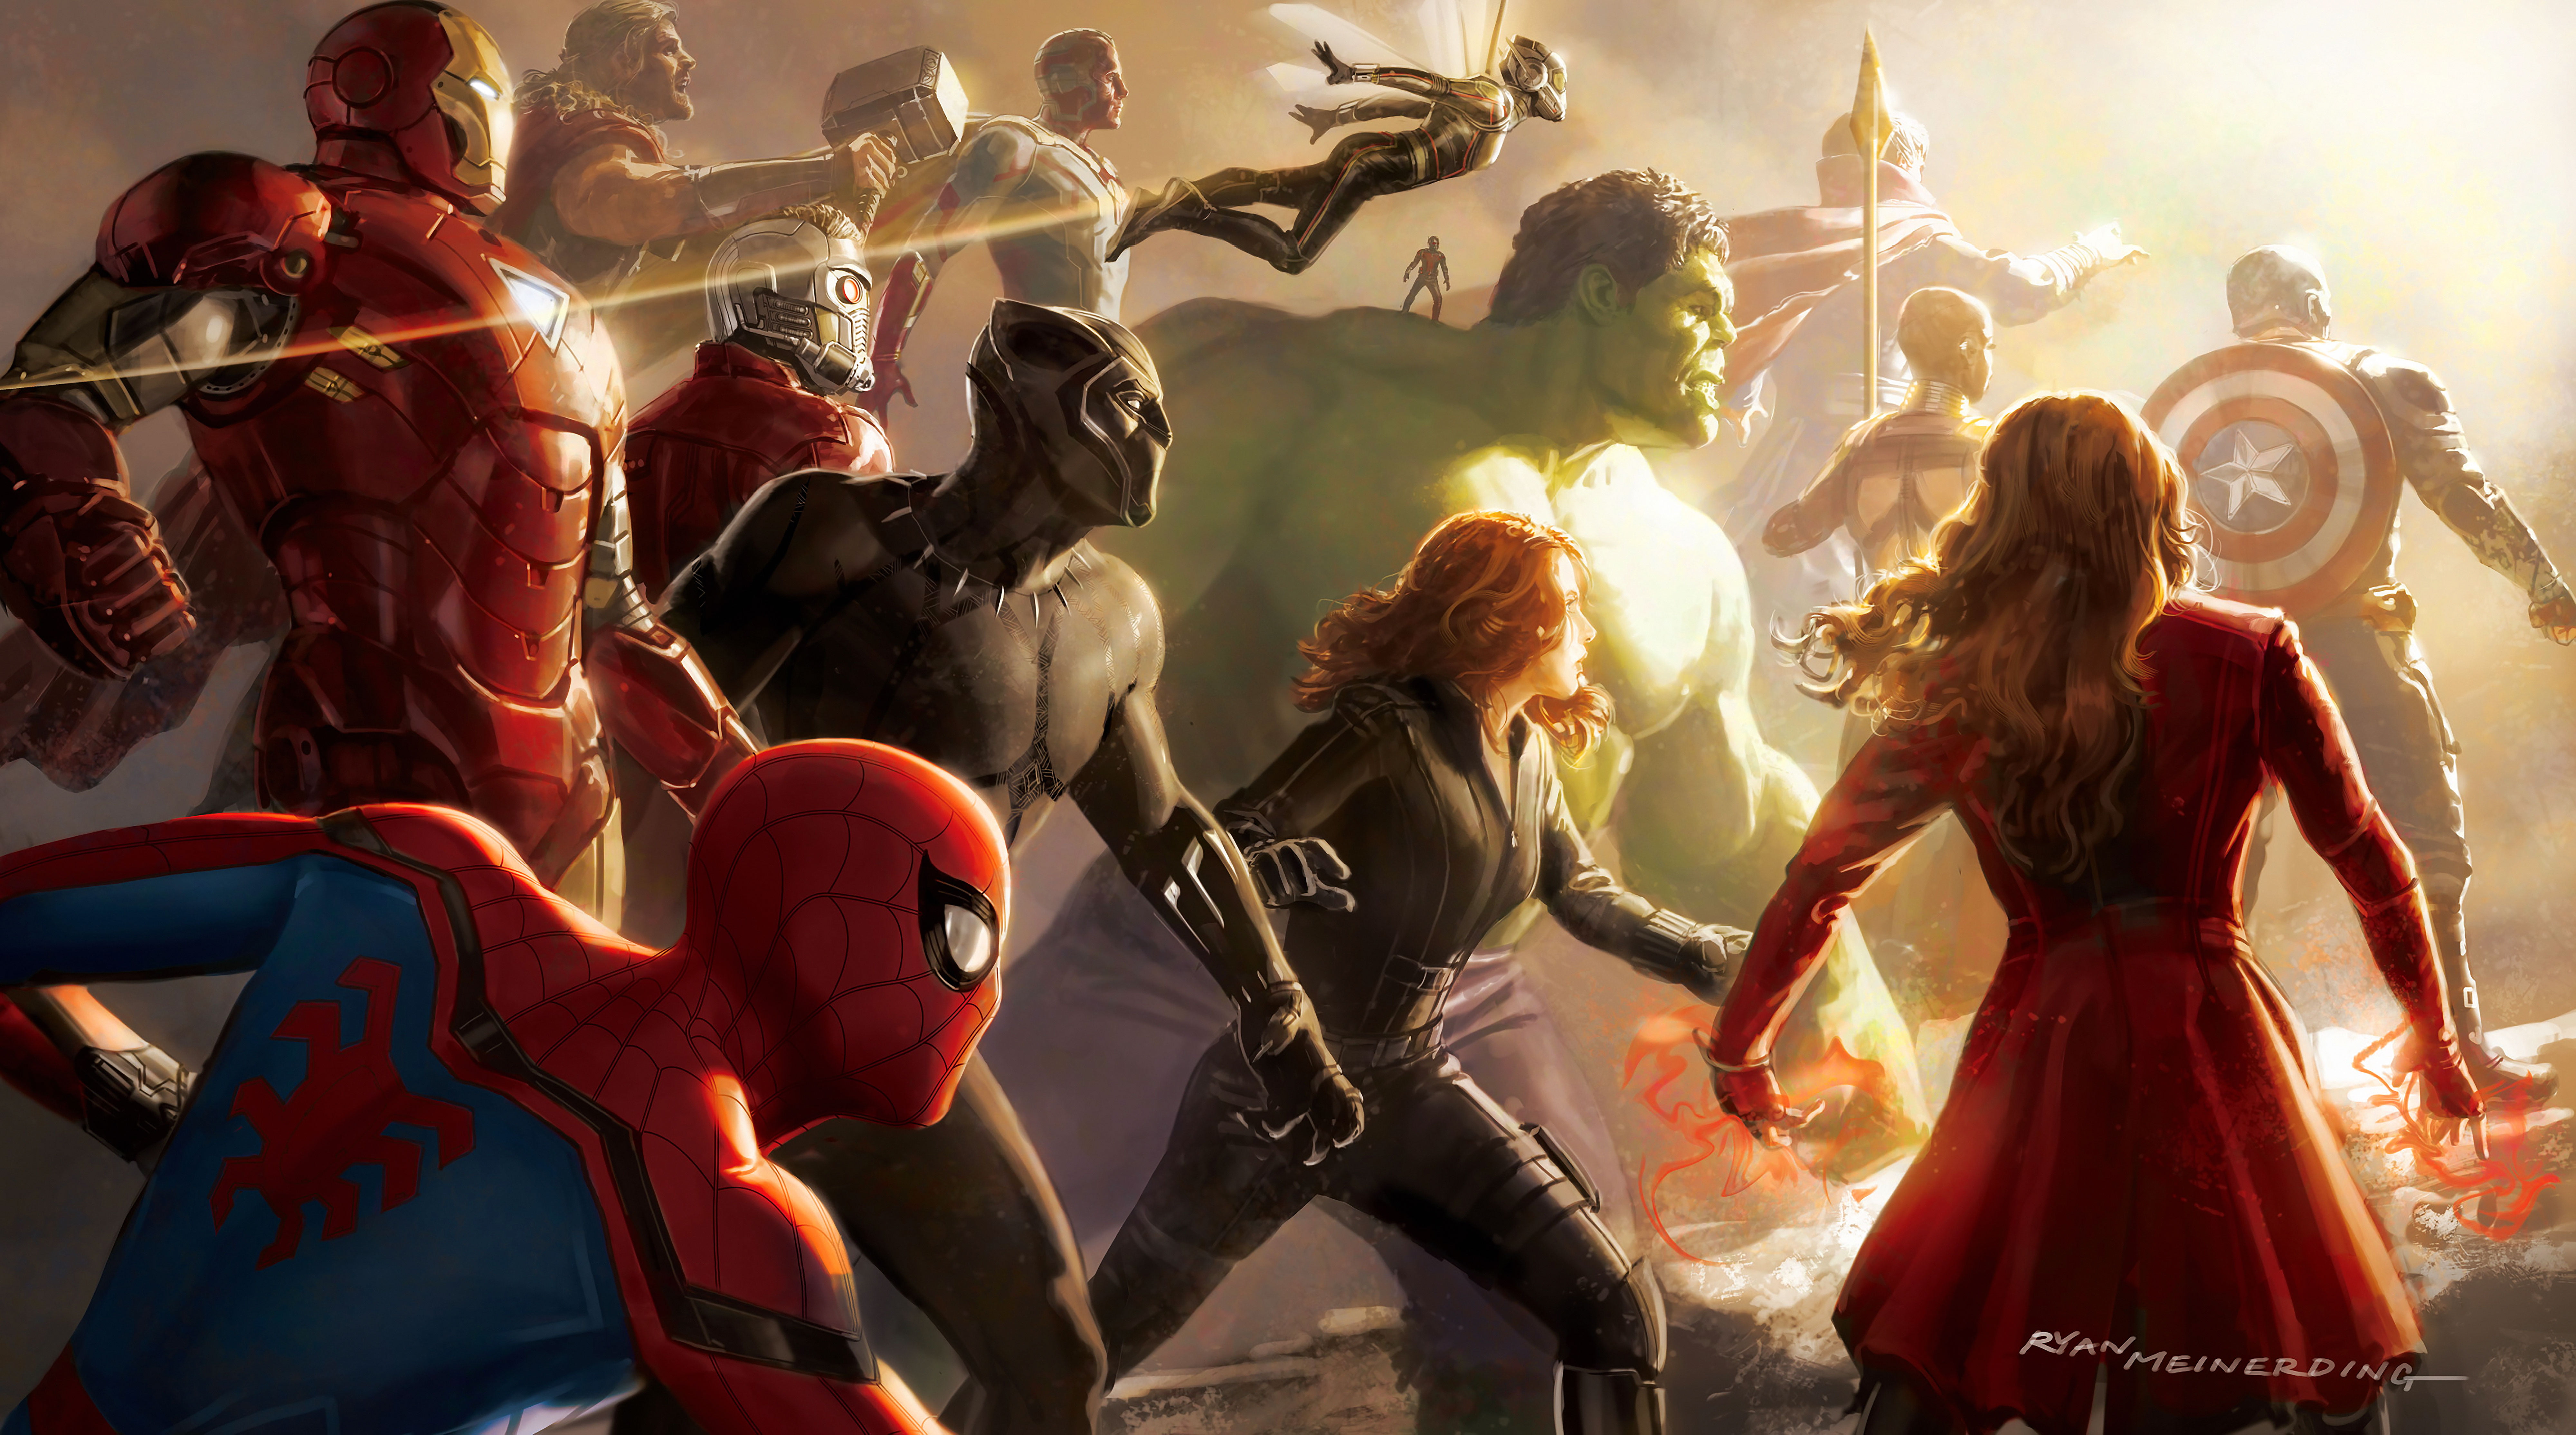 Avengers Vision Artwork Wallpapers